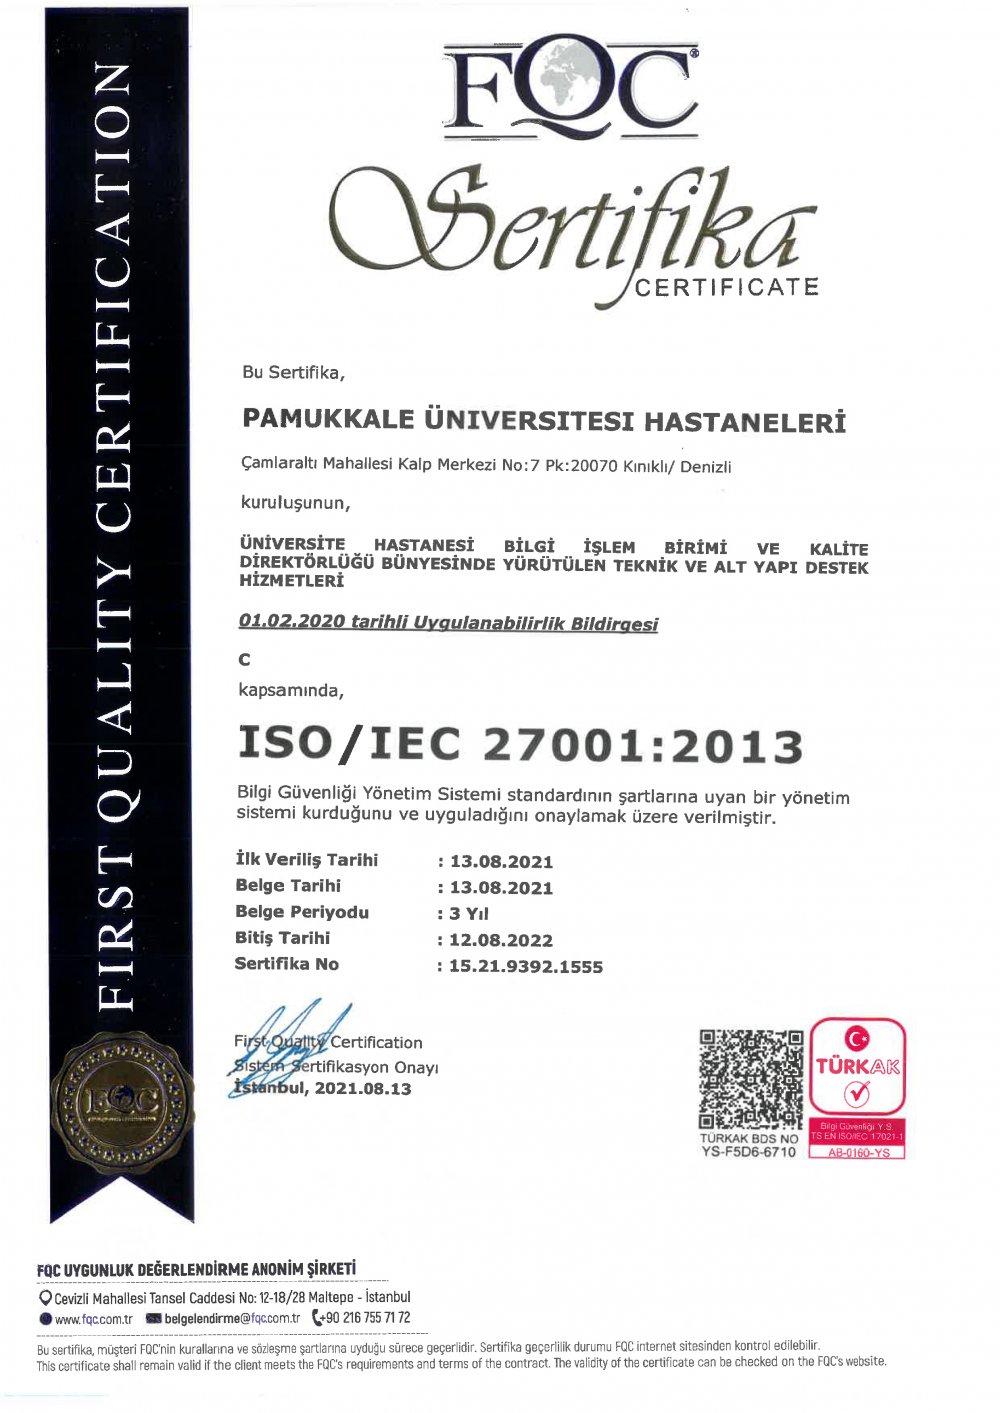 Pamukkale Üniversitesi Hastaneleri, ISO/IEC 27001:2013 Bilgi Güvenliği Yönetim Sistemi / ISO 9001:2015 Kalite Yönetim Sistemi Belgelerini aldı